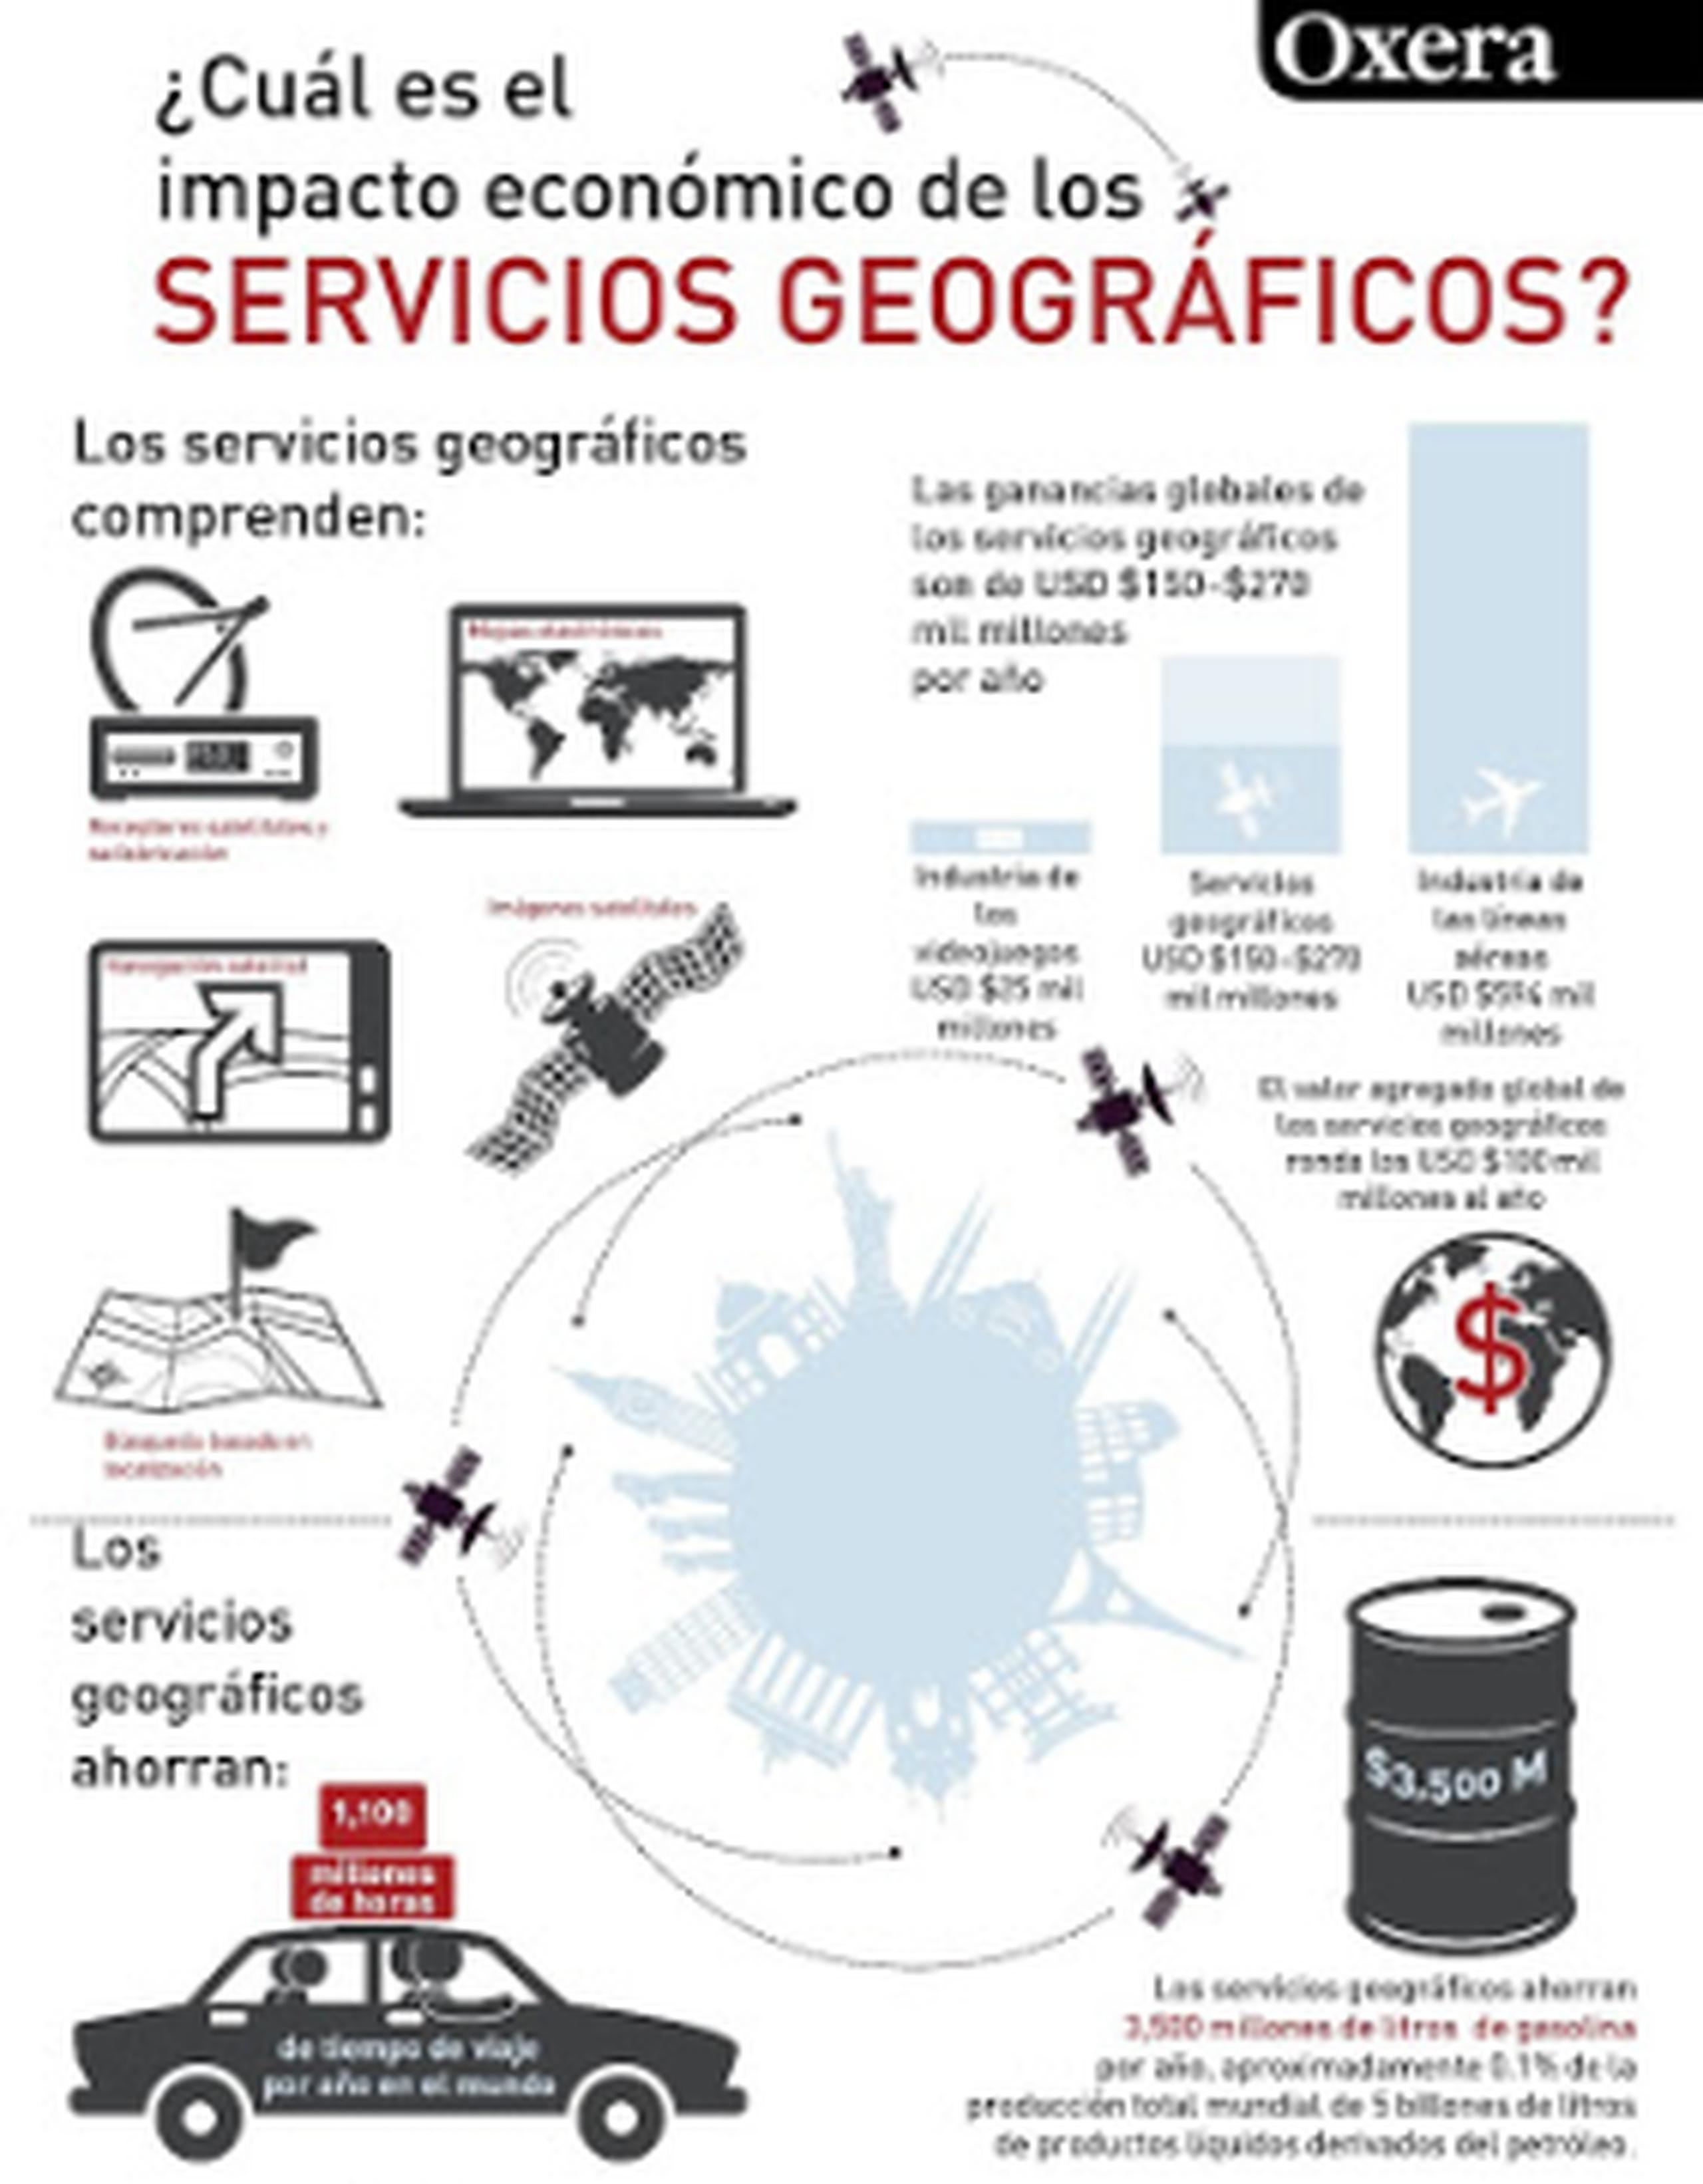 La industria mundial de servicios geográficos está valorada en hasta USD $270 mil millones por año. (Suministrada)